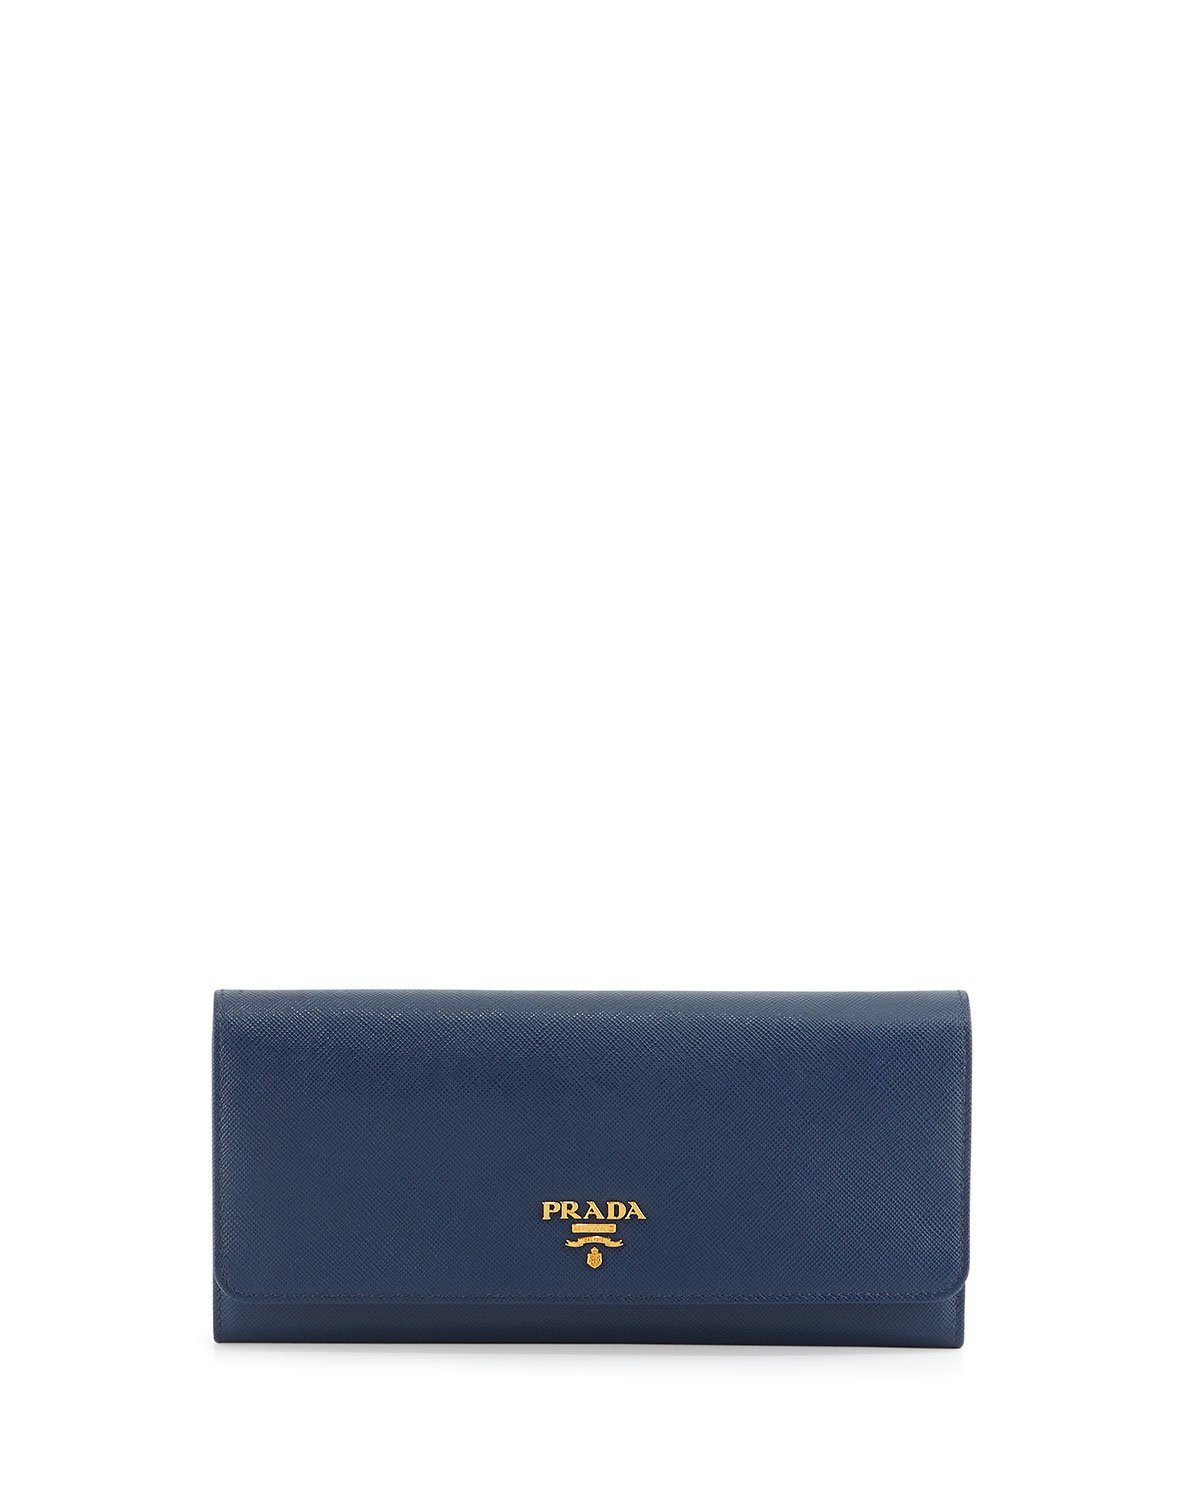 prada wallet navy blue